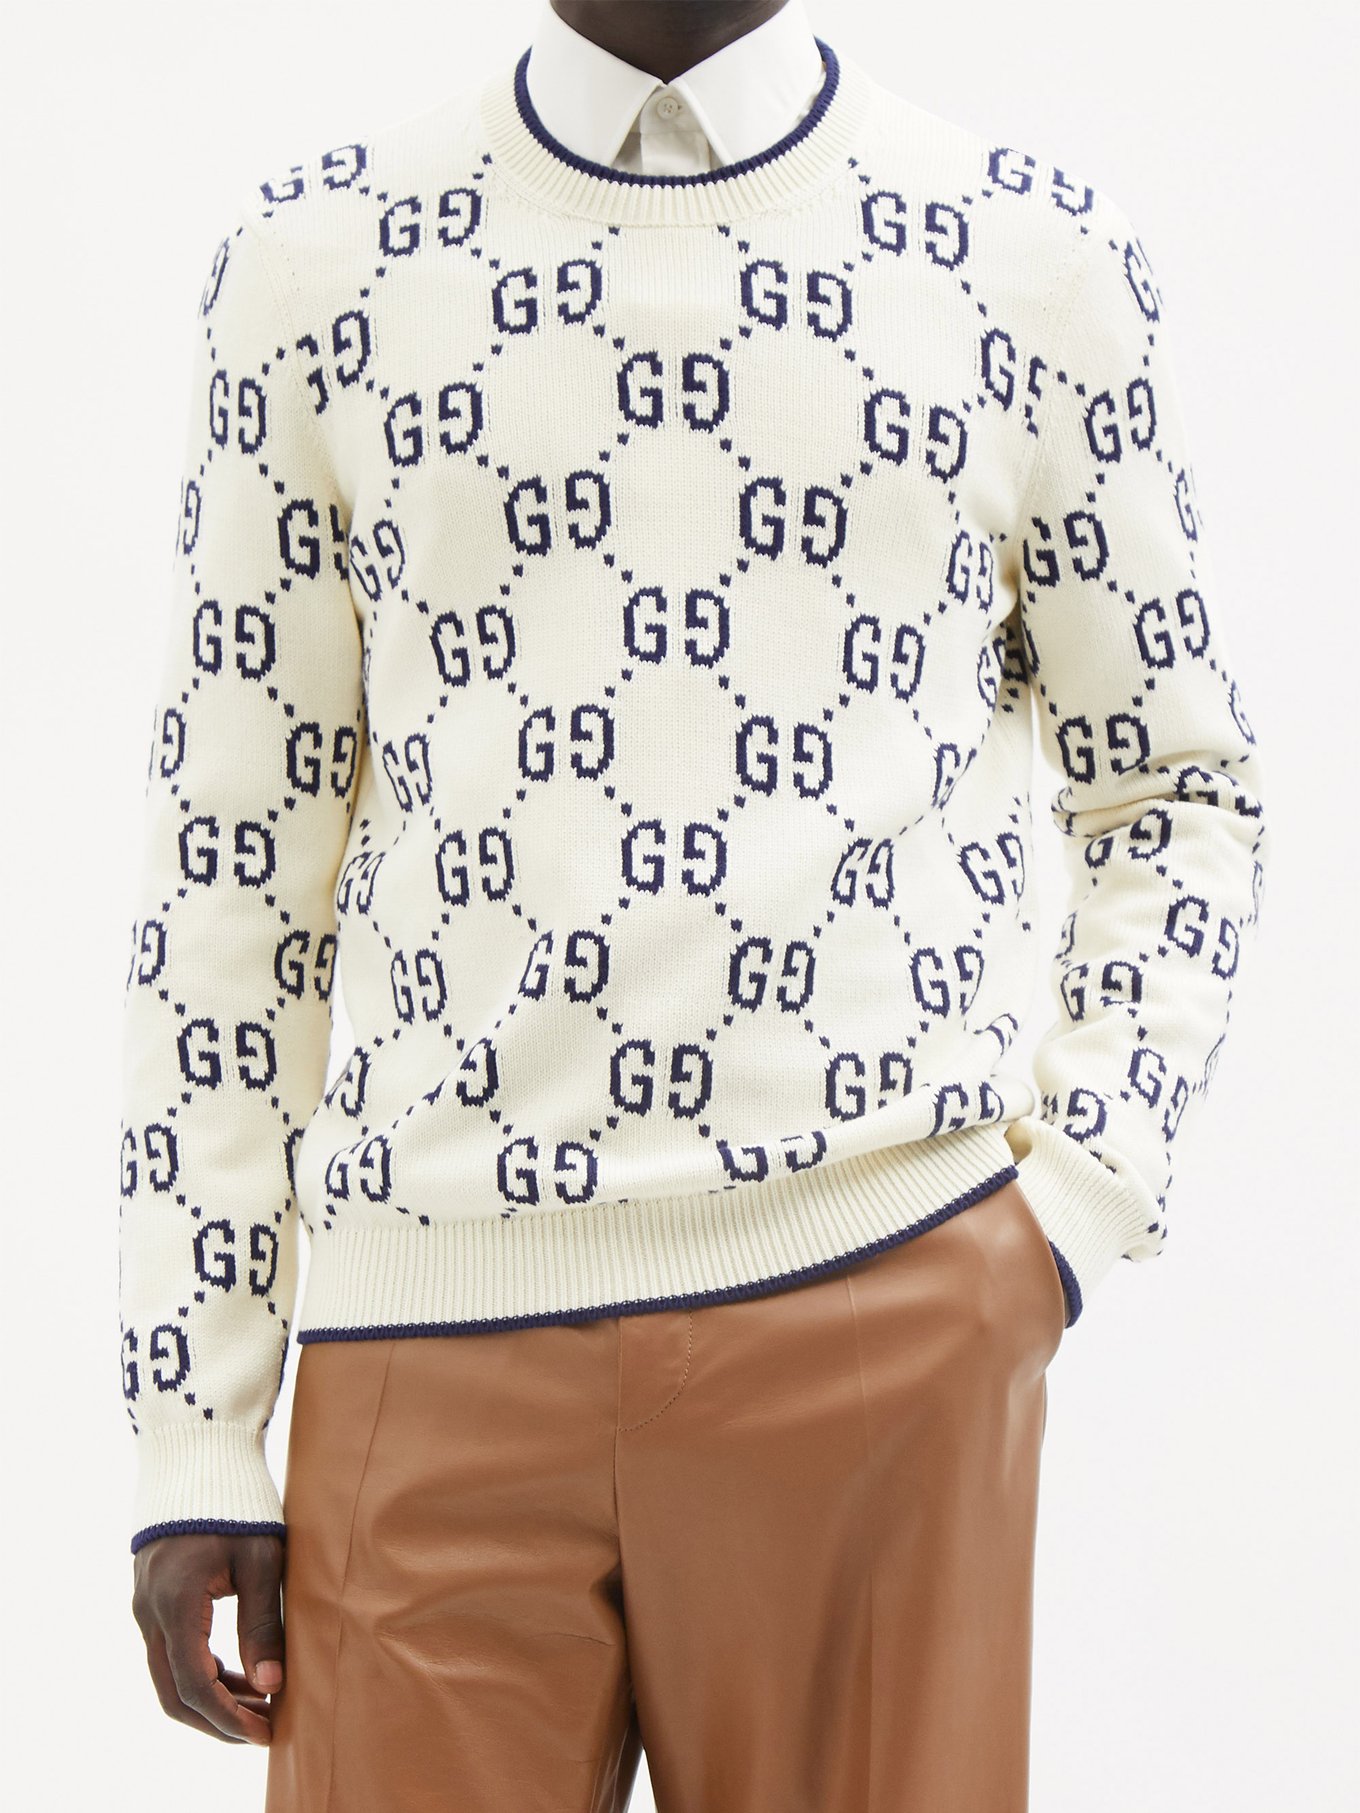 Gucci: Yellow GG Intarsia Sweater